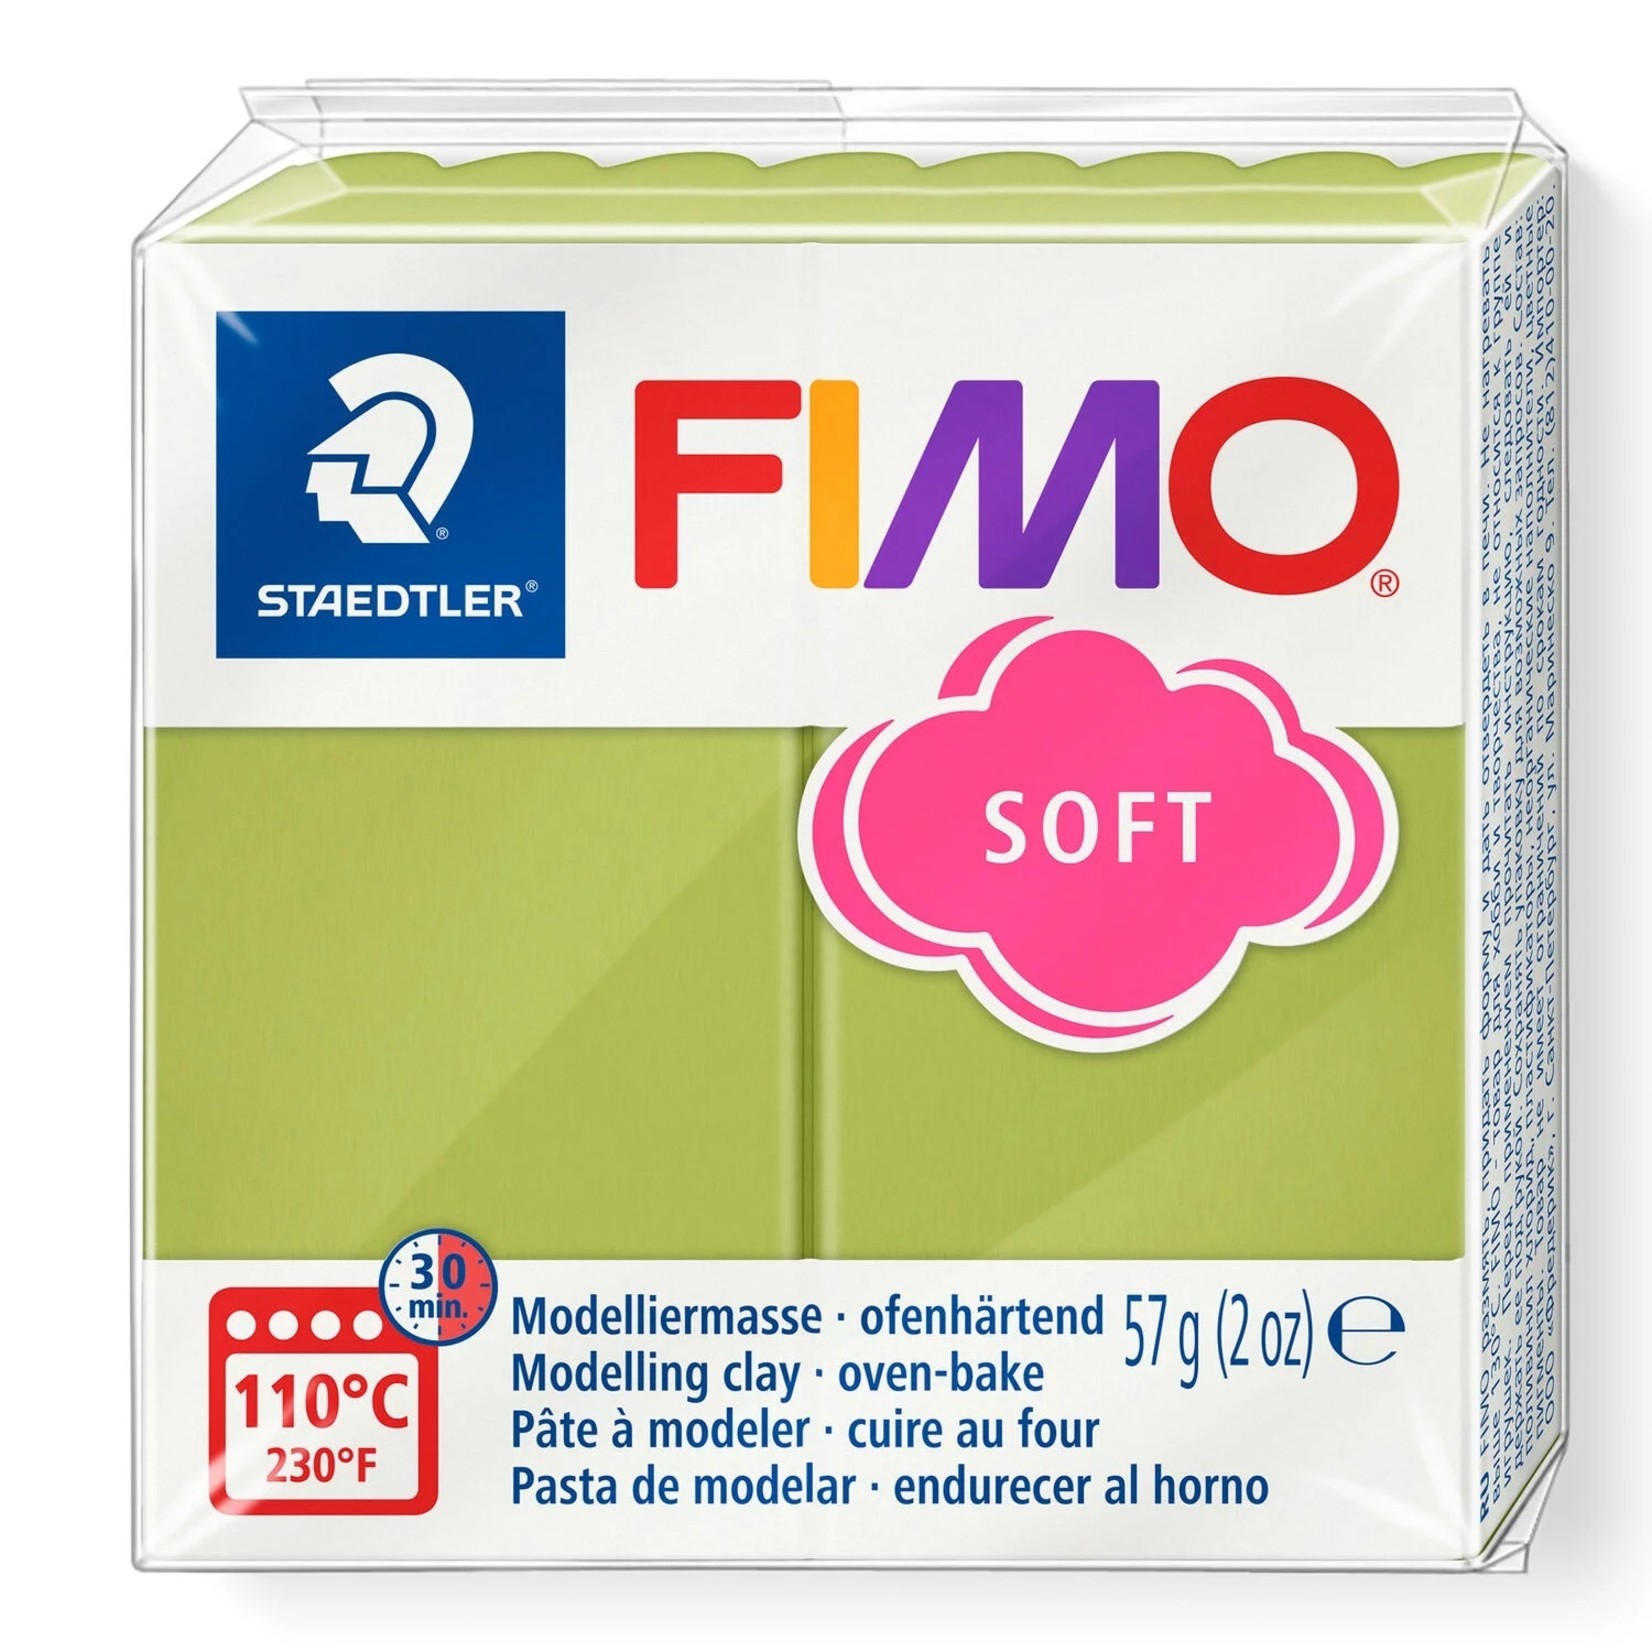 STAEDTLER FIMO SOFT T50 PISTACHIO NUT